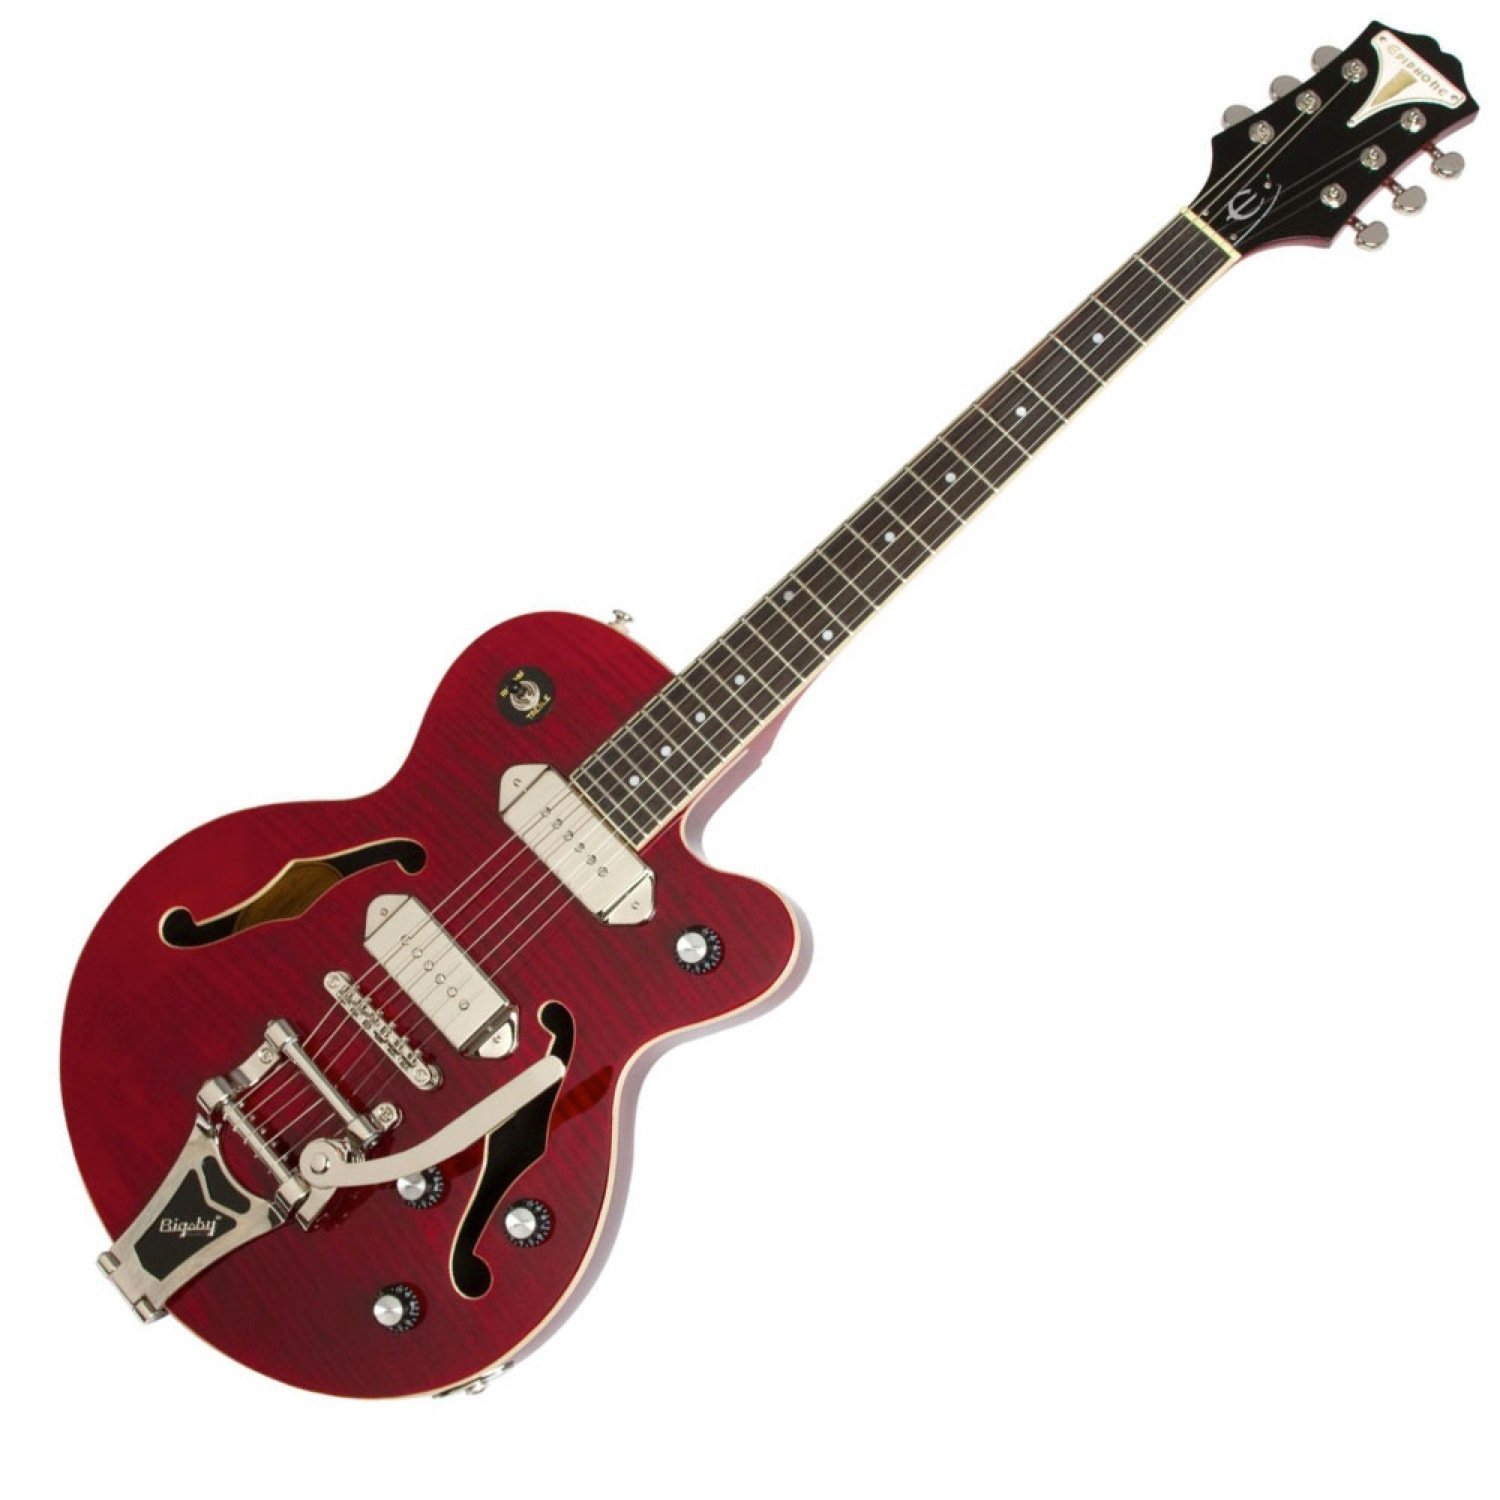 東ティモール マントル シニス 赤いエレキギター かっこいい パンチ ベルト 巨大